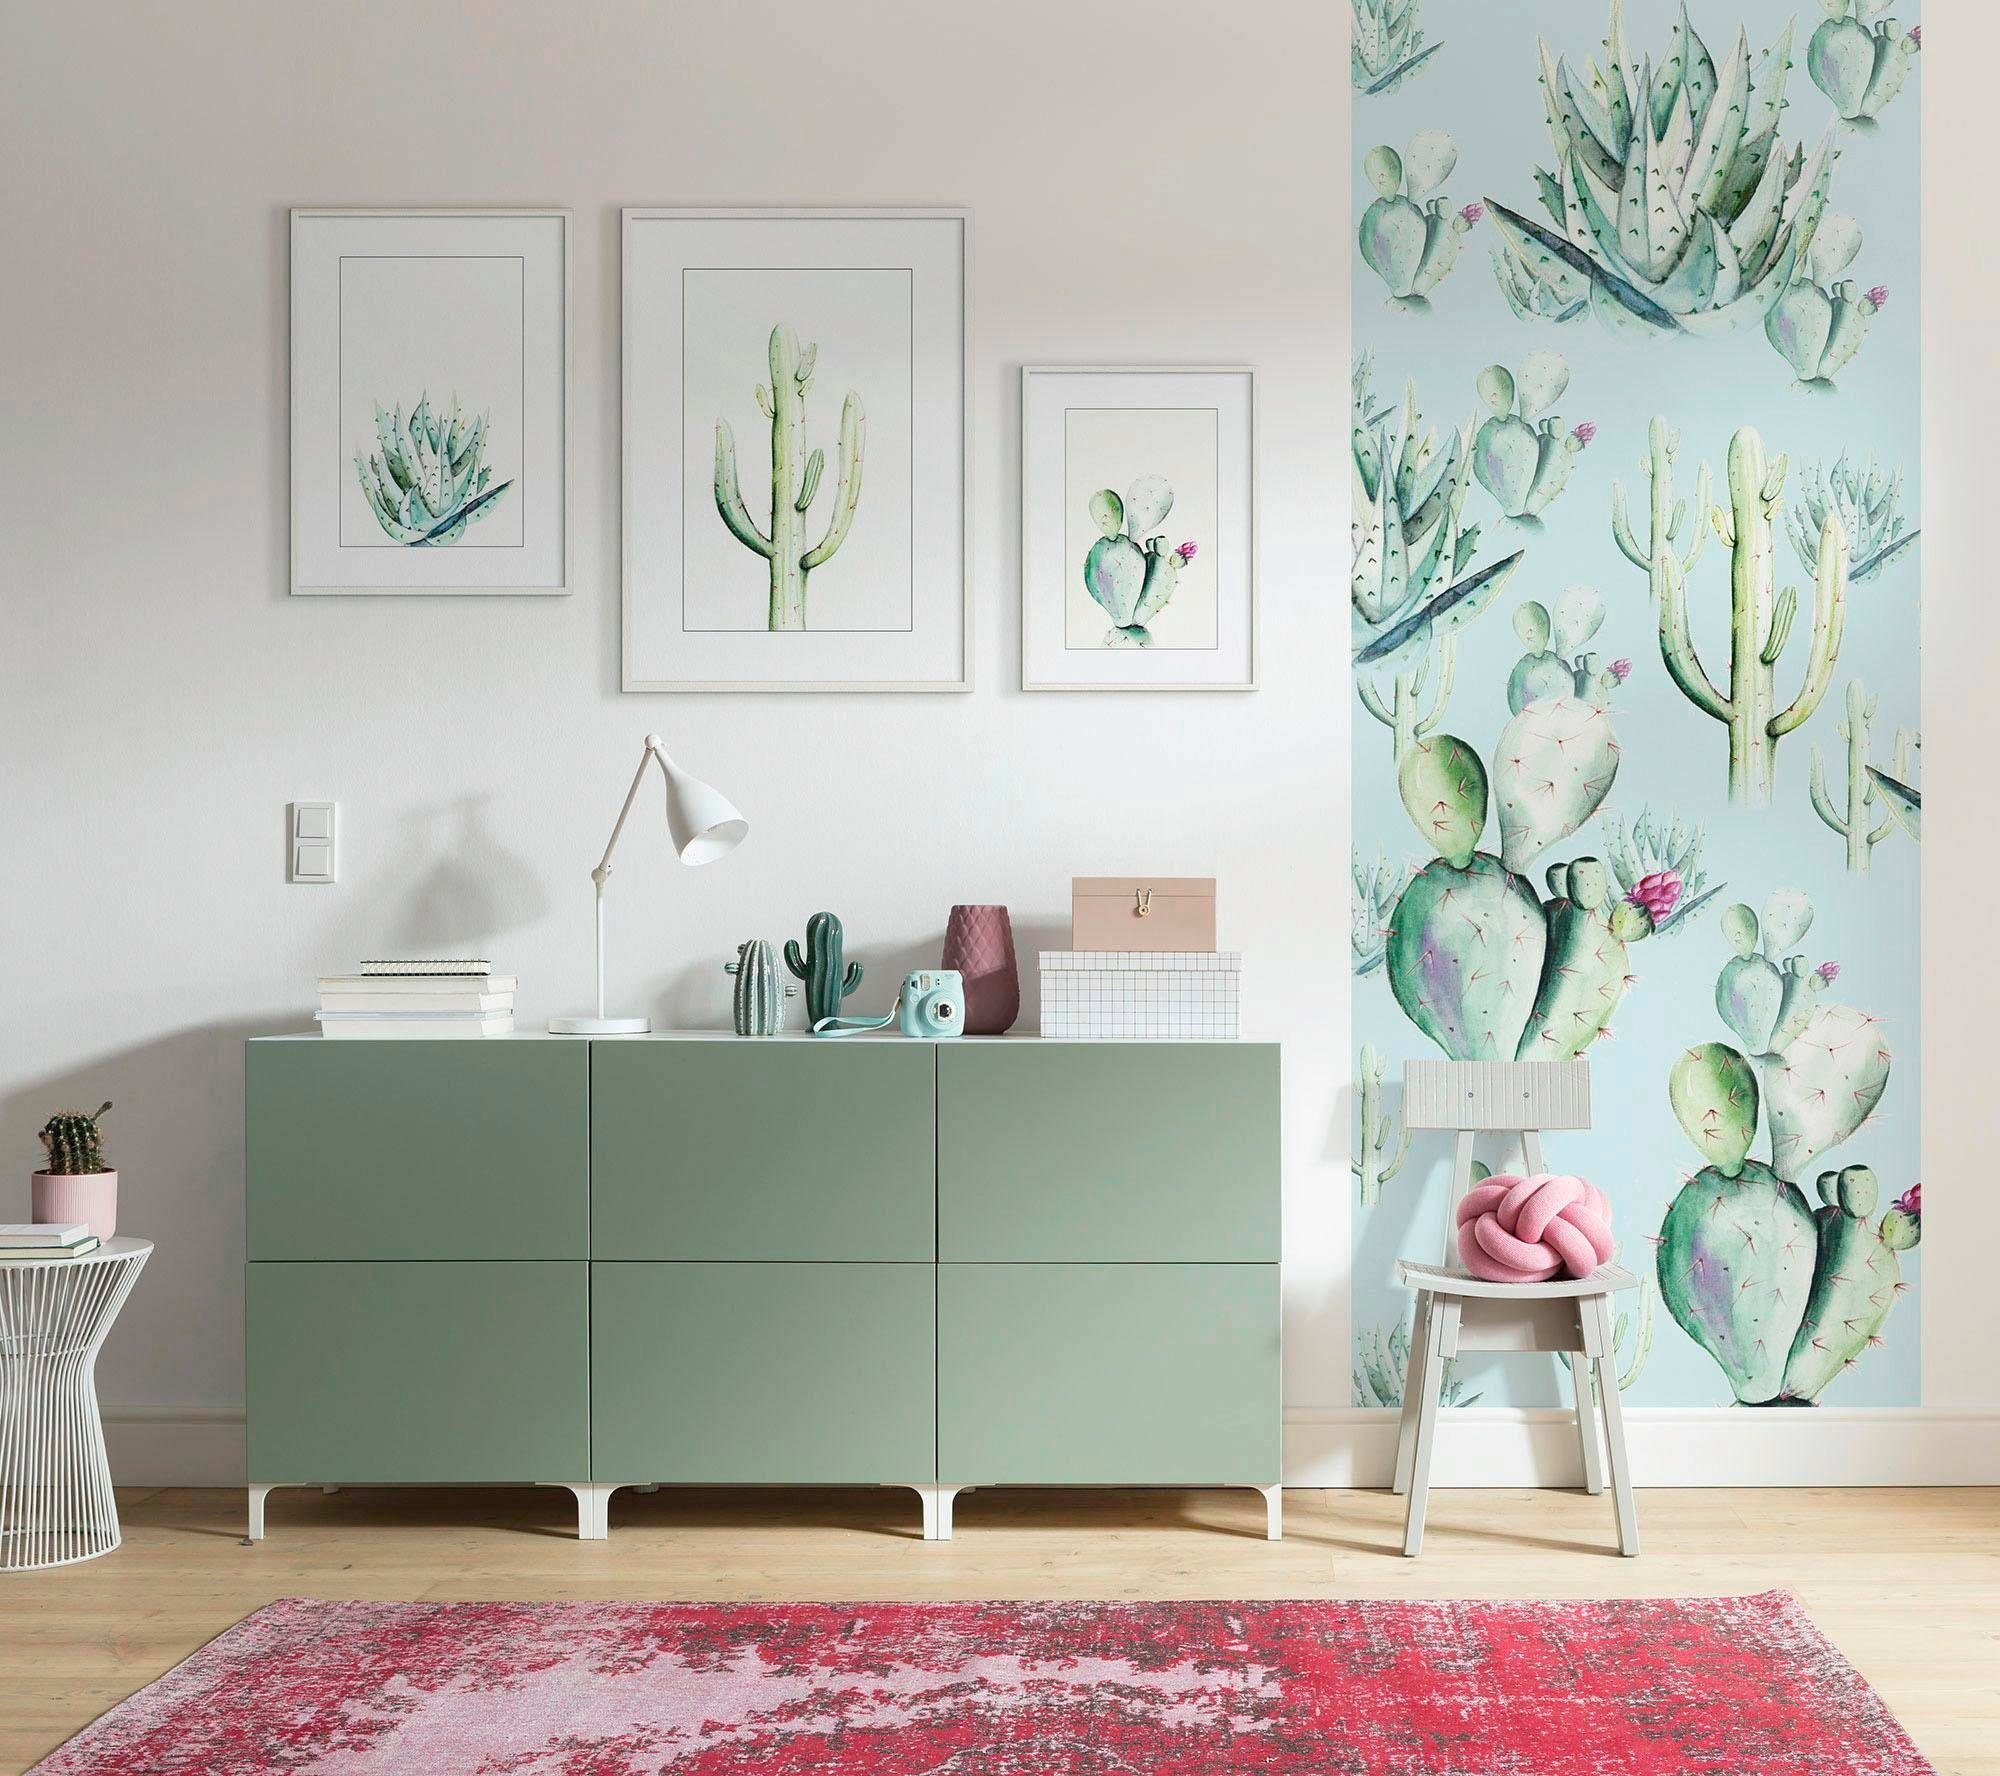 St), Poster Prickly (1 Kinderzimmer, Watercolor, Schlafzimmer, Blätter, Pear Komar Wohnzimmer Pflanzen